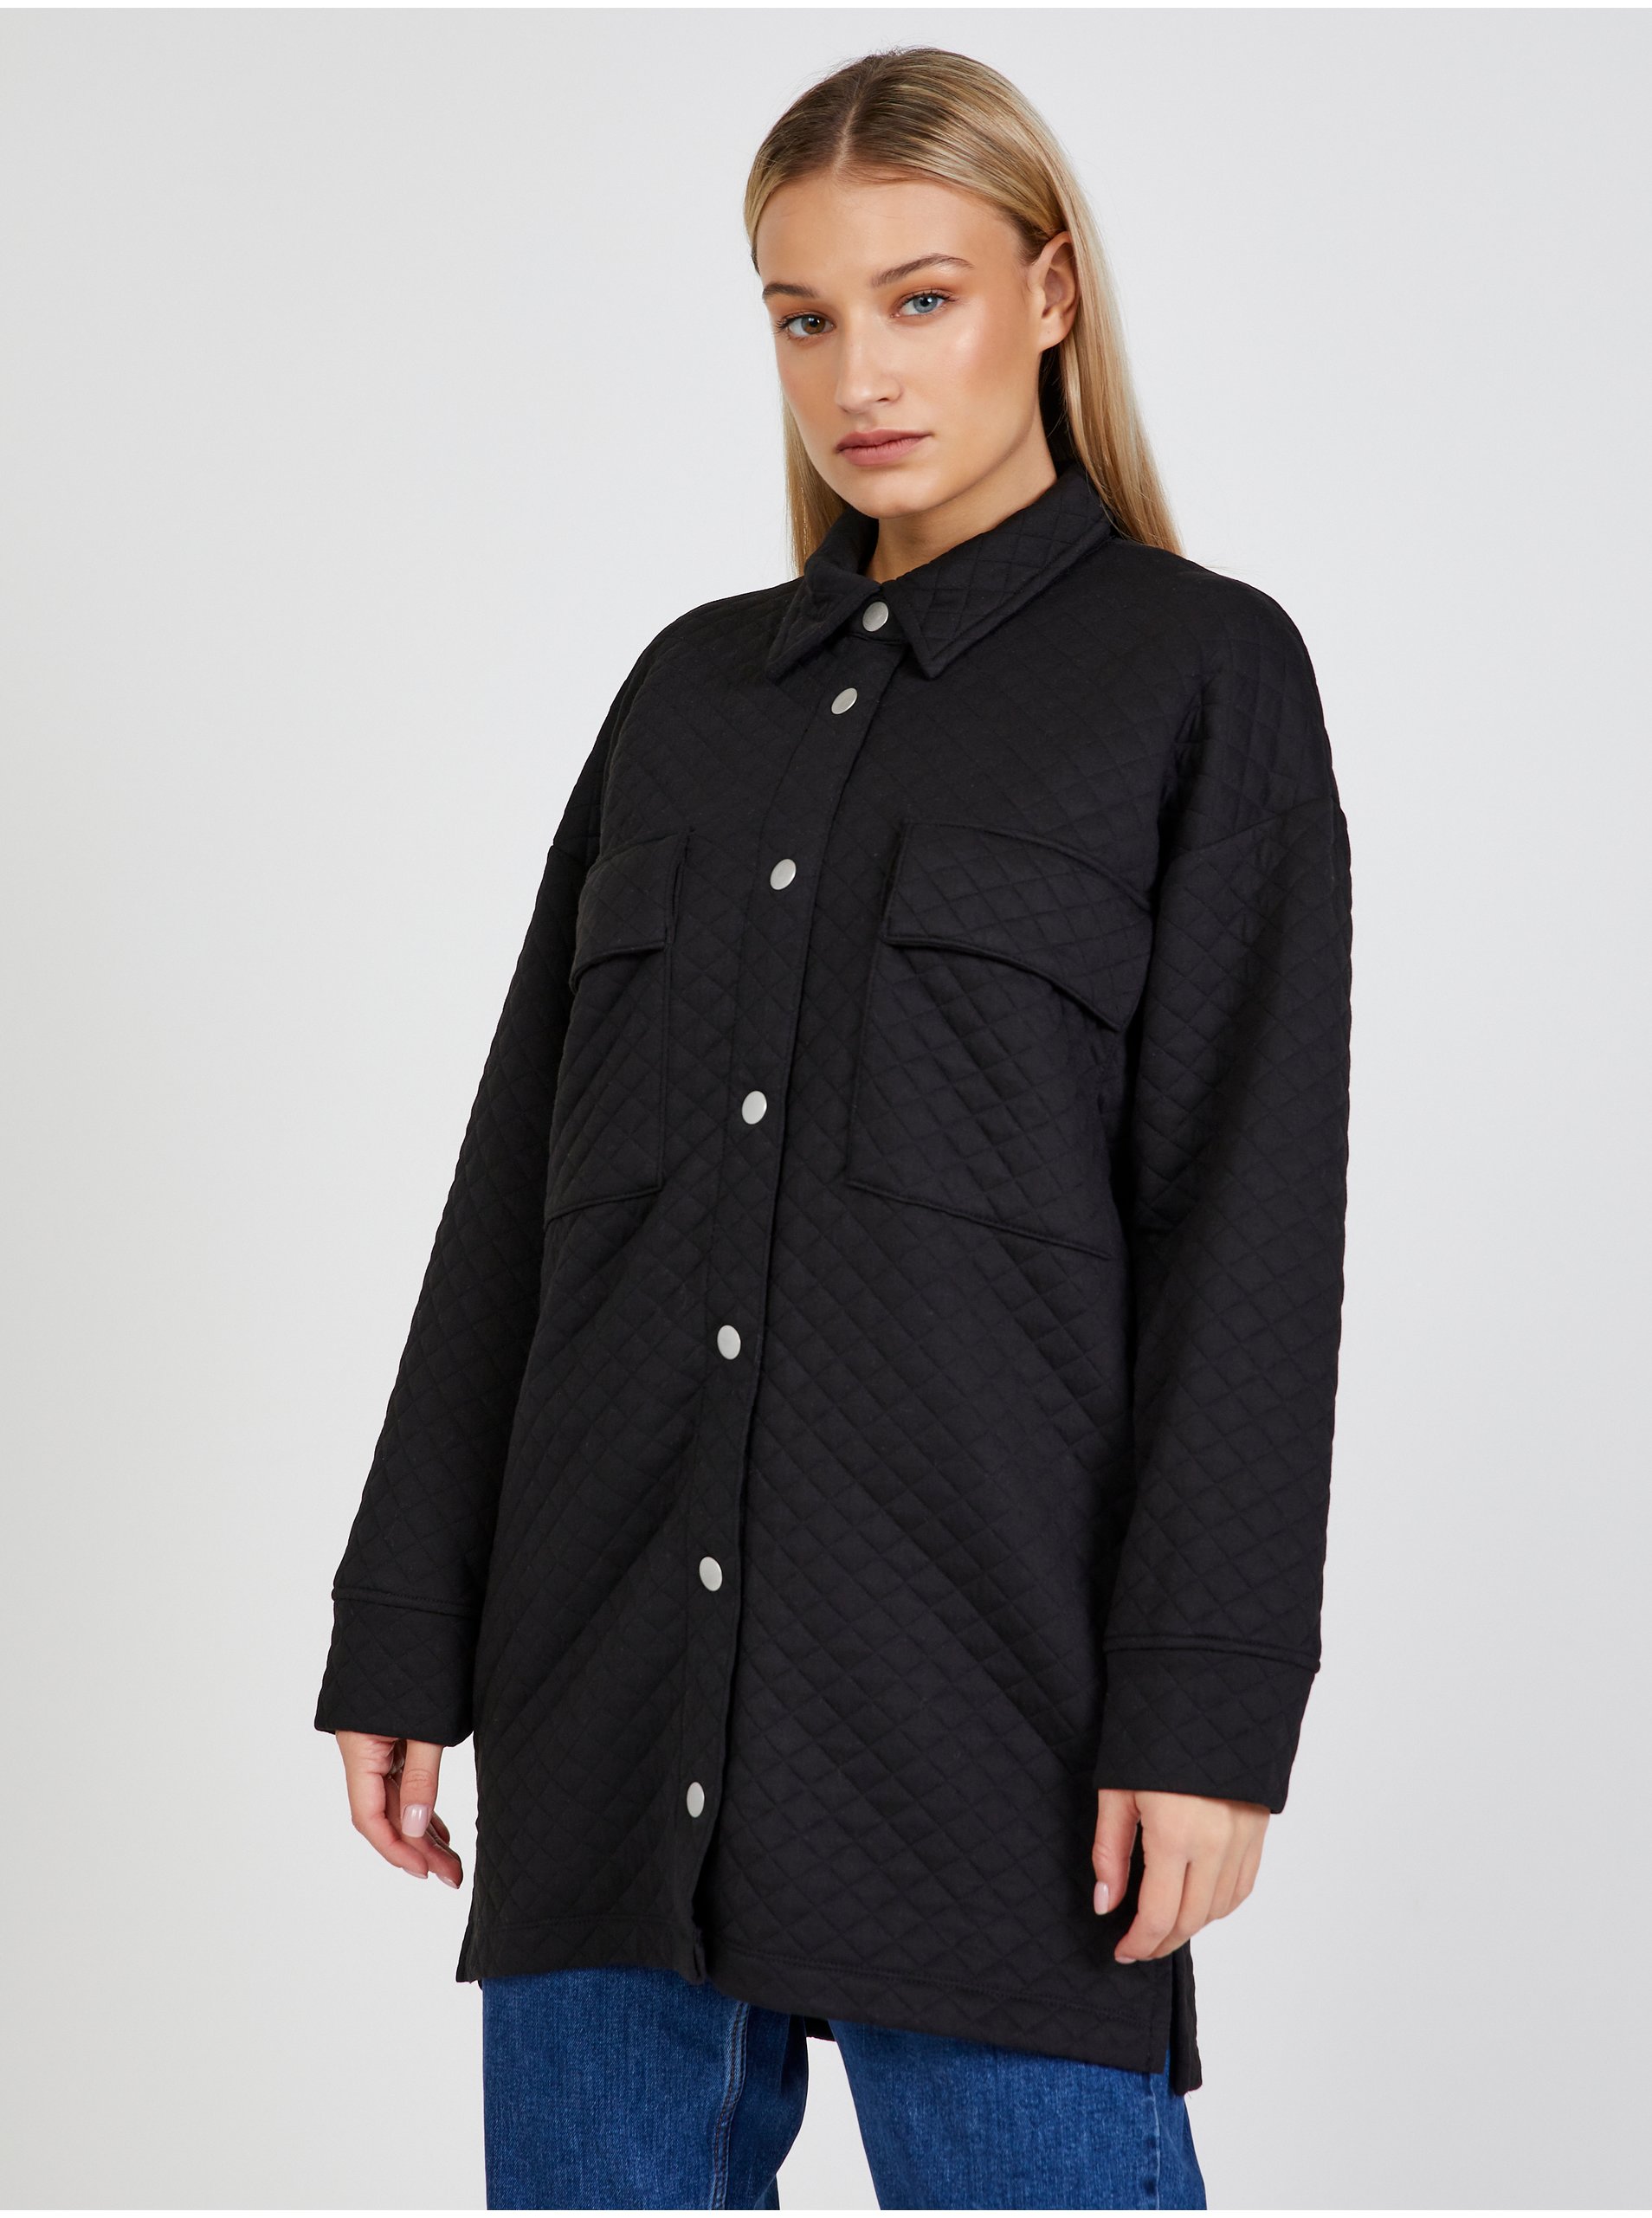 E-shop Čierna dámska prešívaná ľahká košeľová bunda Jacqueline de Yong Ruth